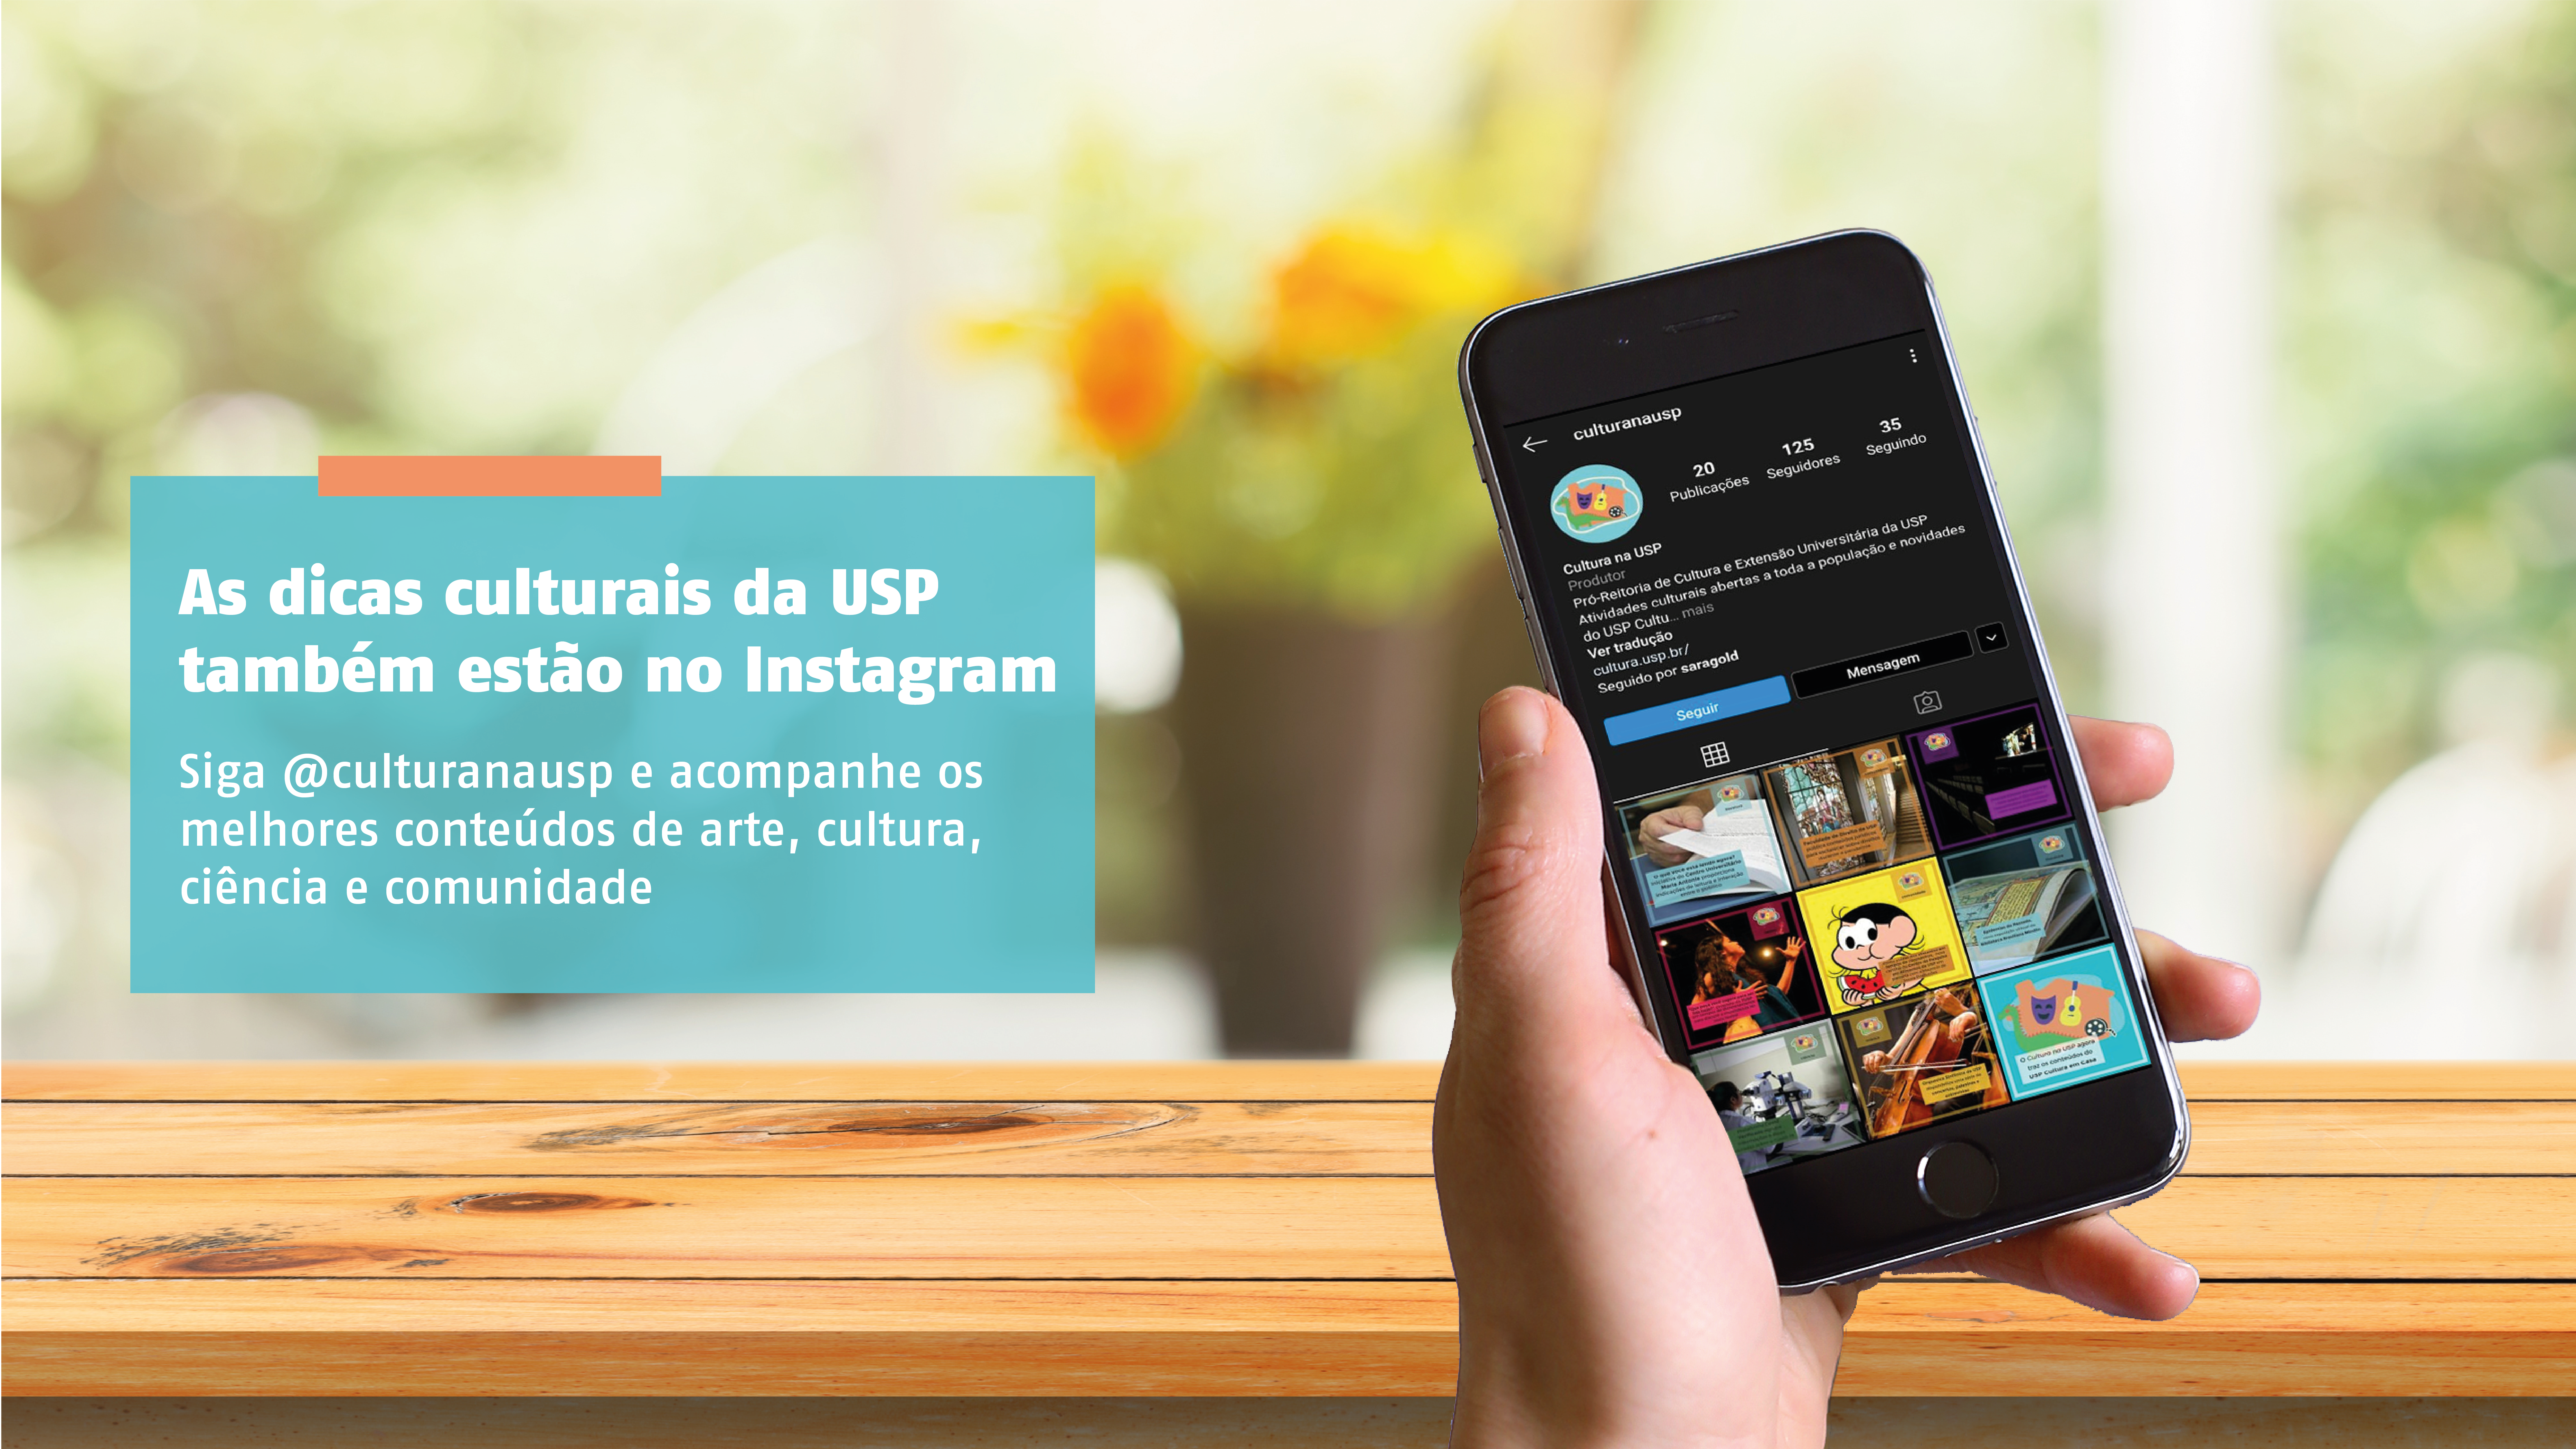 Instagram @culturanausp traz dicas e conteúdos online oferecidos pela USP